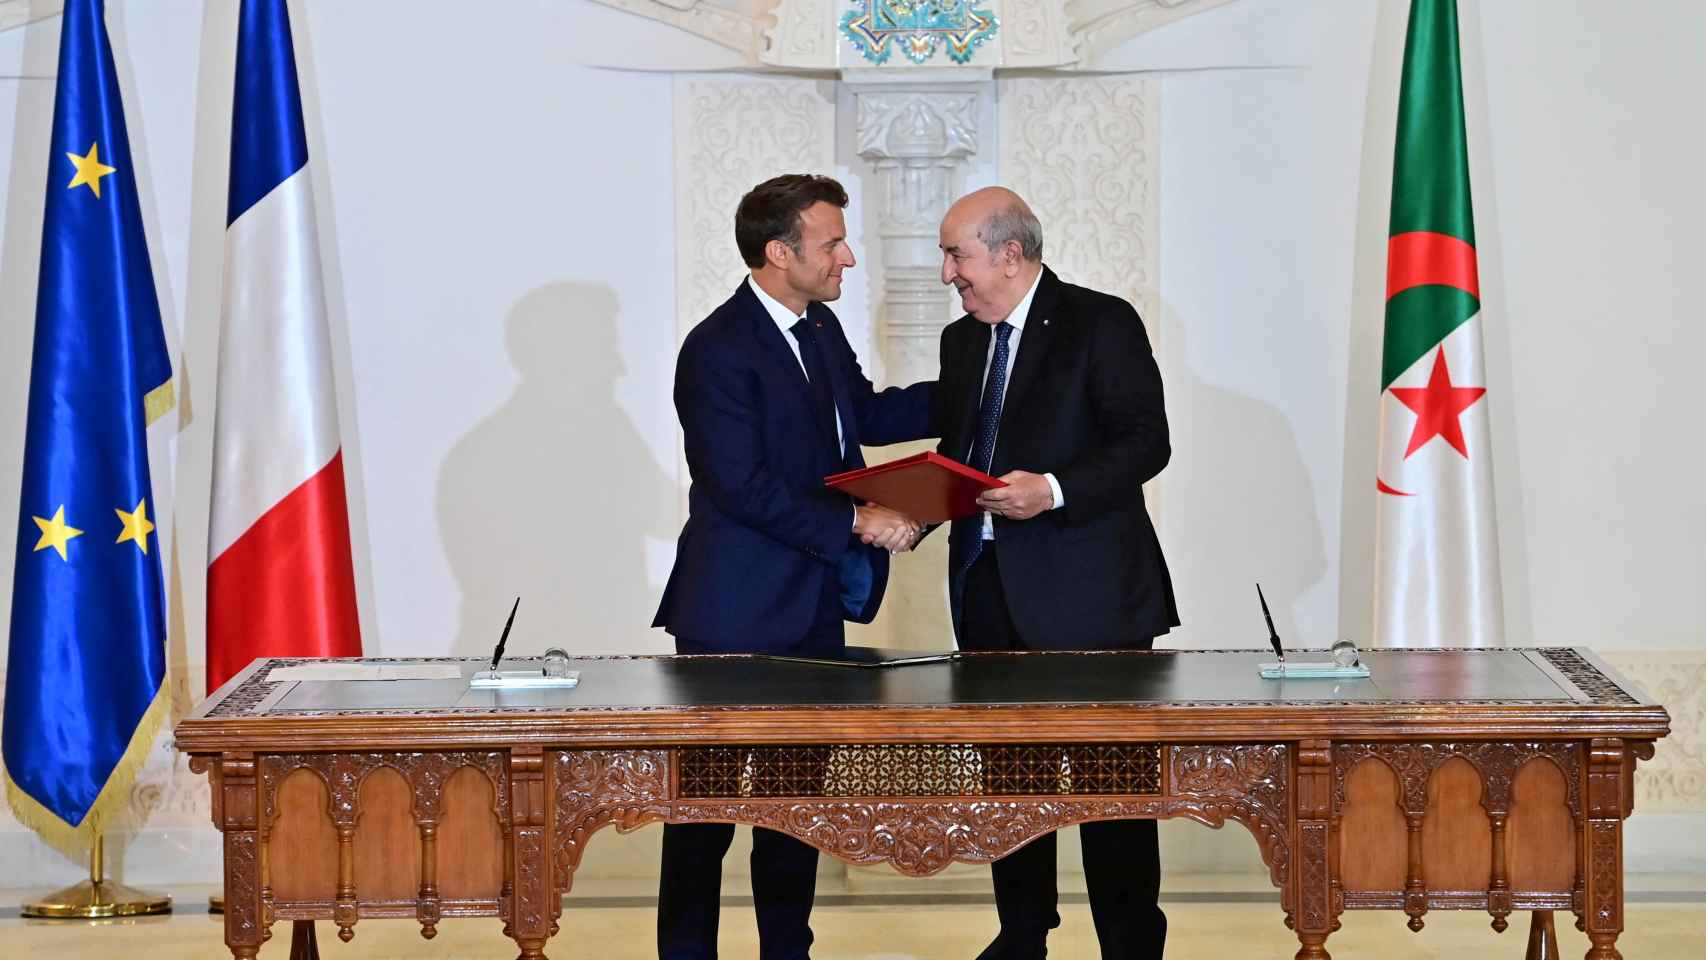 El presidente argelino y el presidente francés, antes de la firma de un nuevo acuerdo gasístico en Argel.